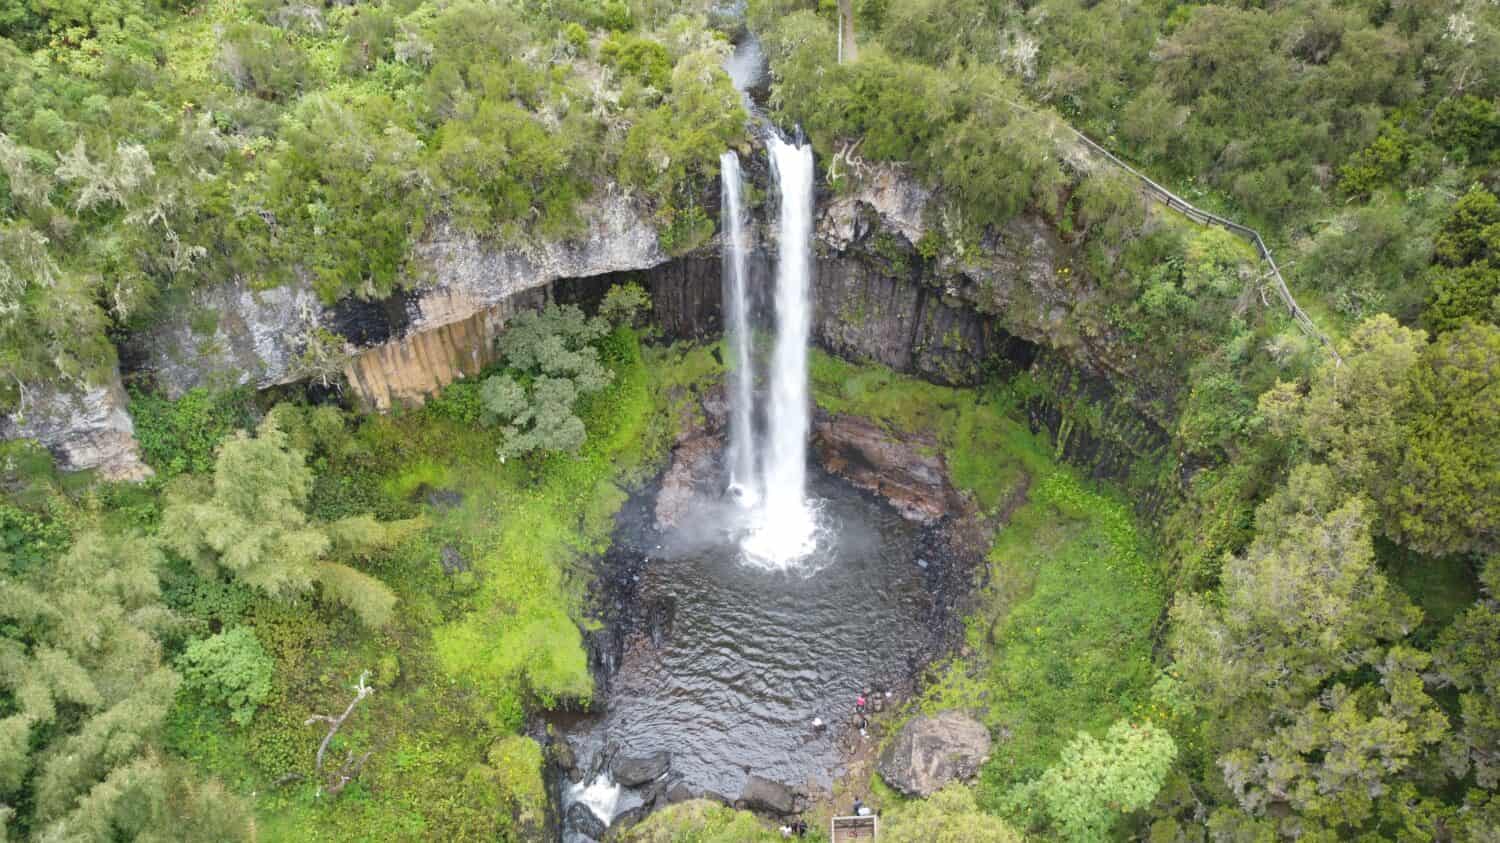 Chania Waterfall at The Aberdare National Park - Kenya